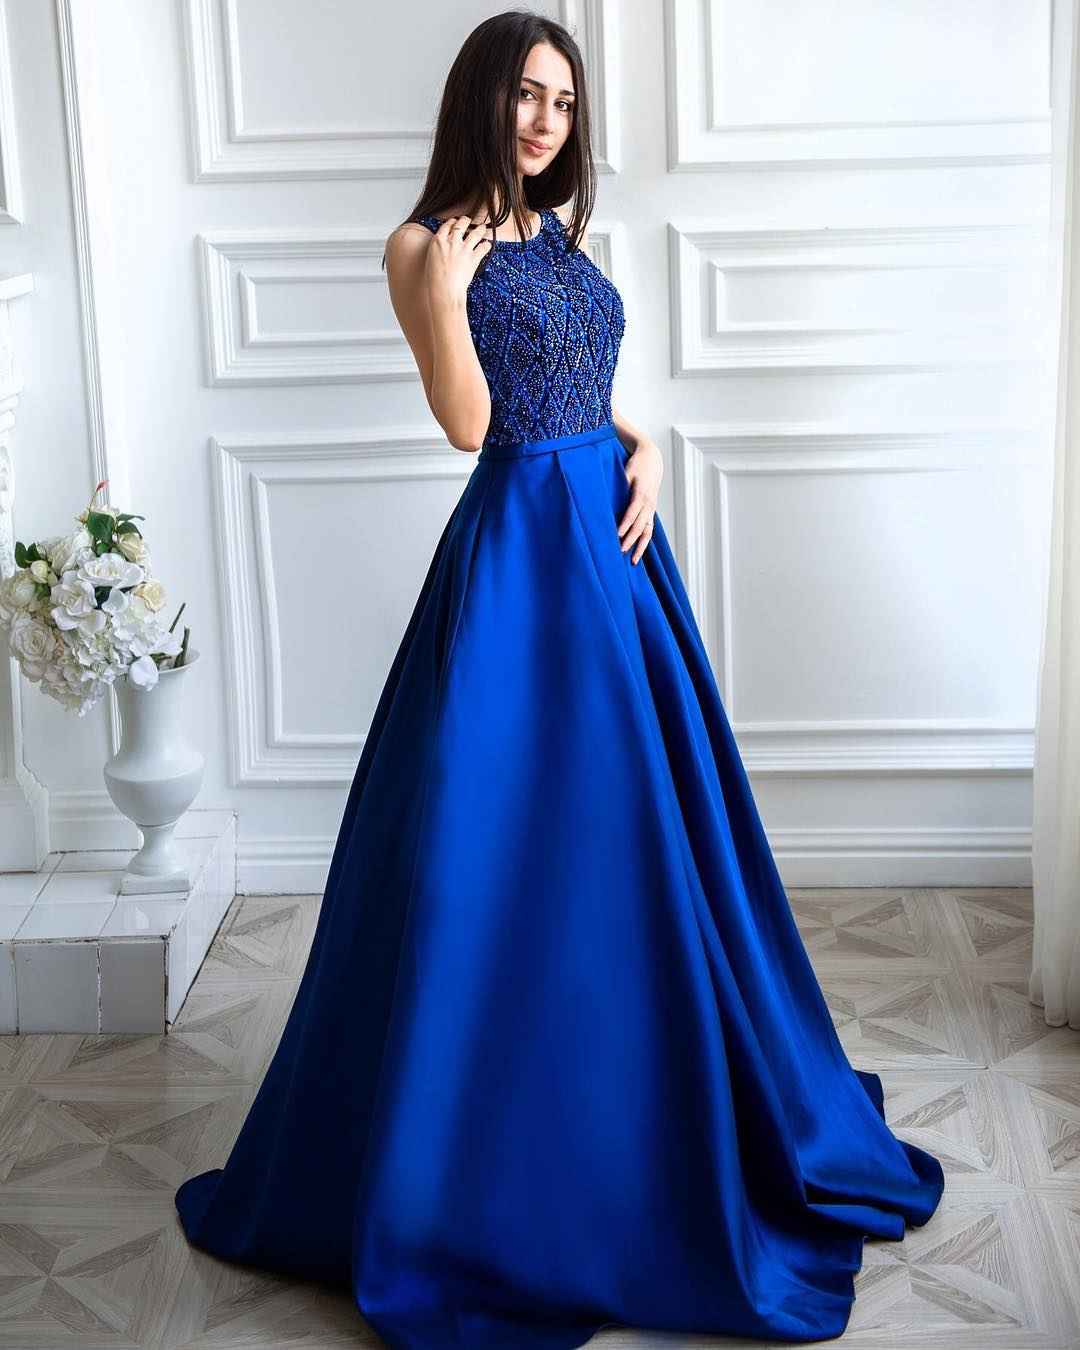 Модное синее платье на выпускной 2019-2020 фото_6